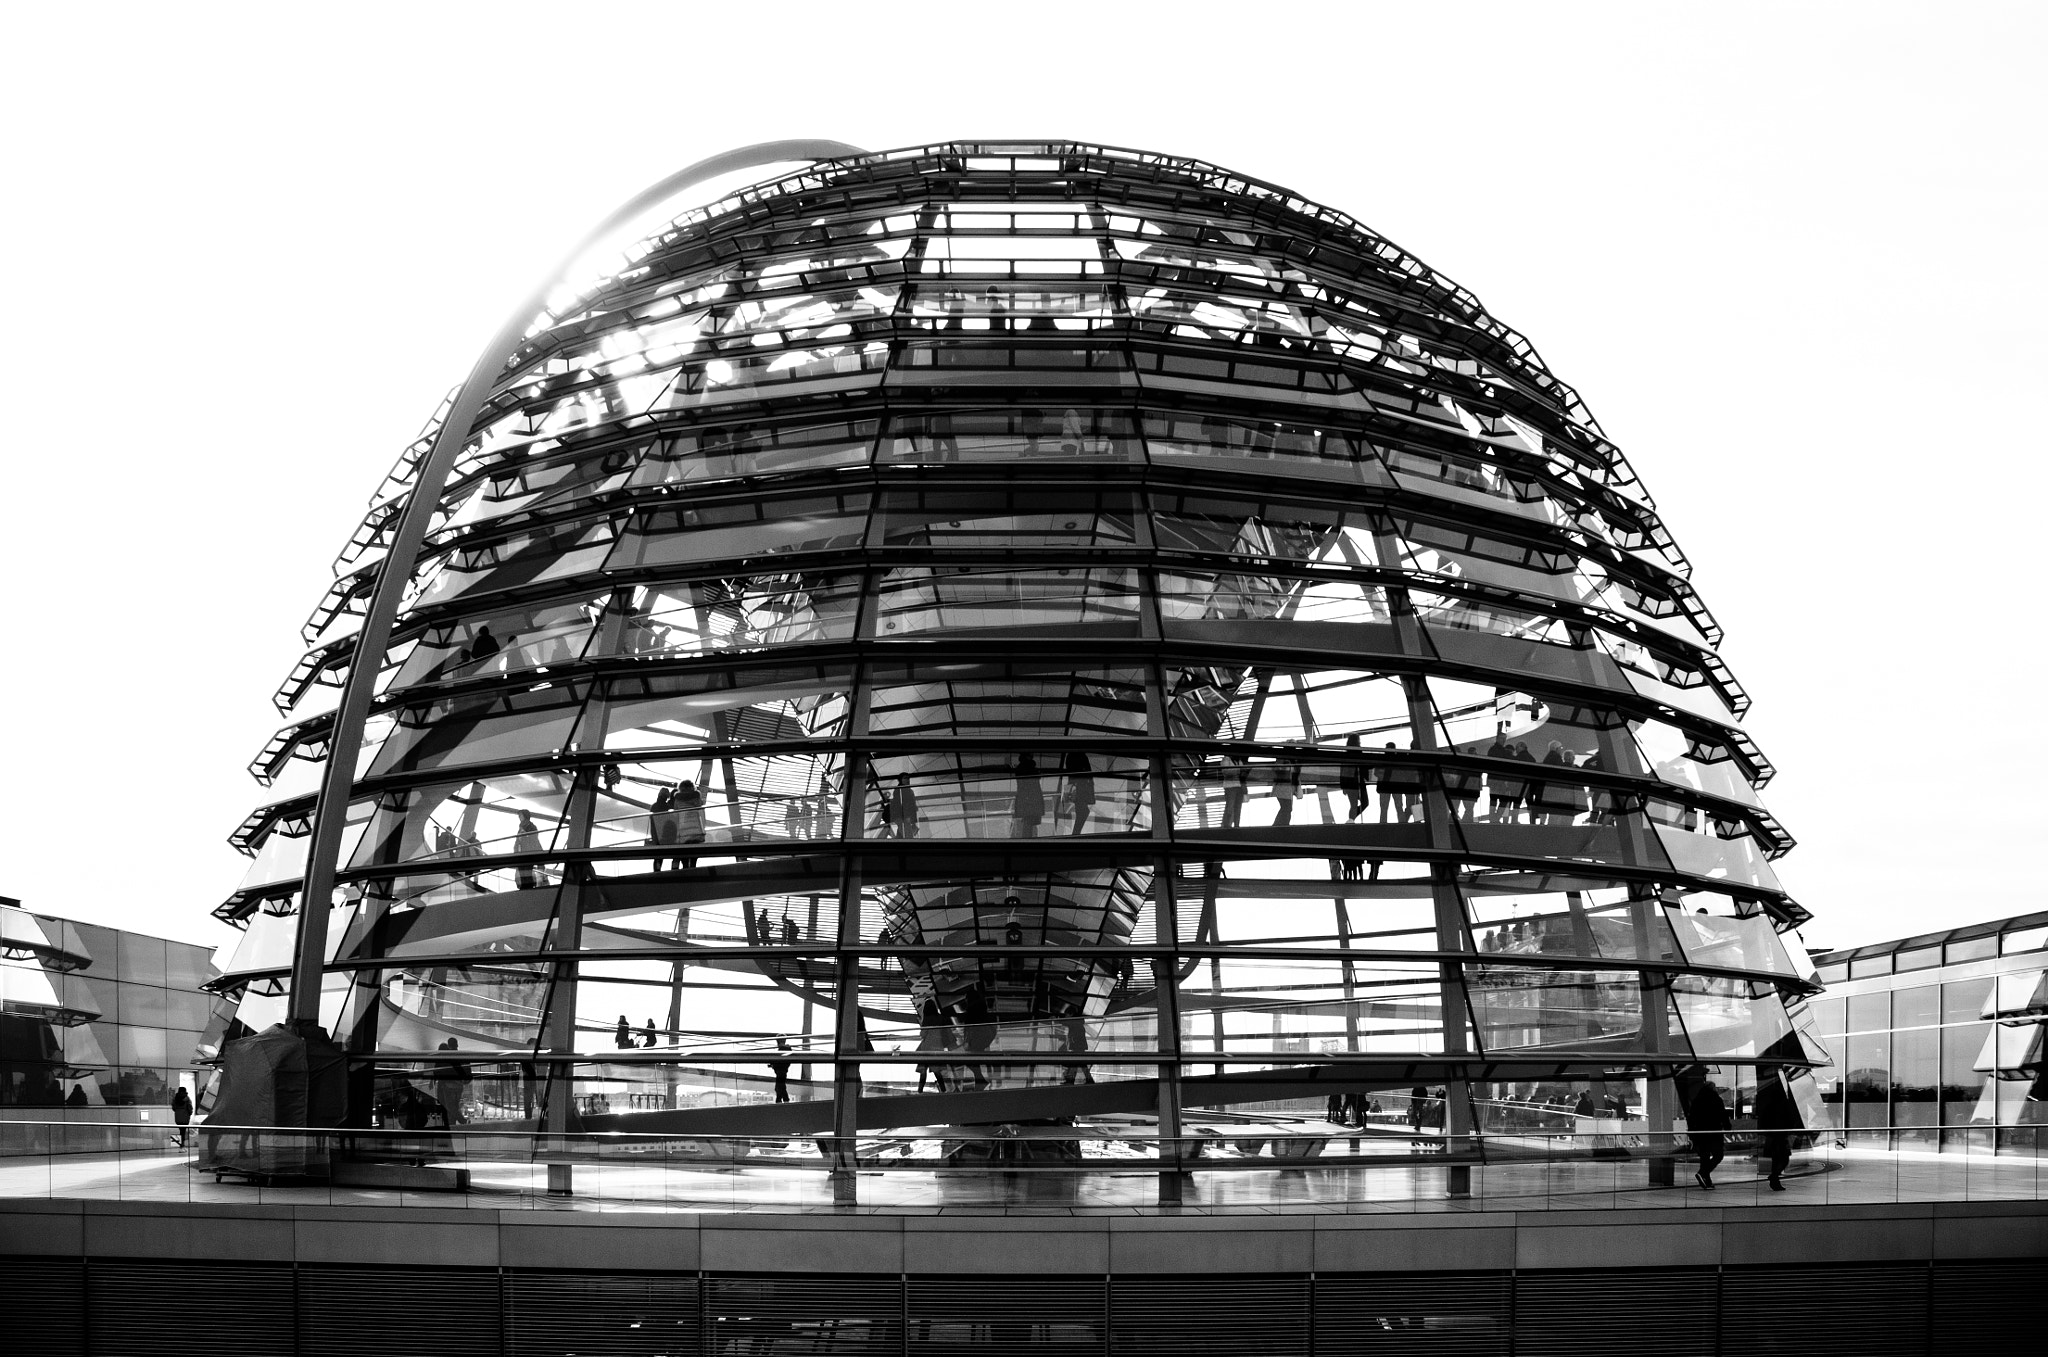 Nikon D7000 + Nikon AF-S DX Nikkor 18-70mm F3.5-4.5G ED-IF sample photo. Reichstag berlin photography